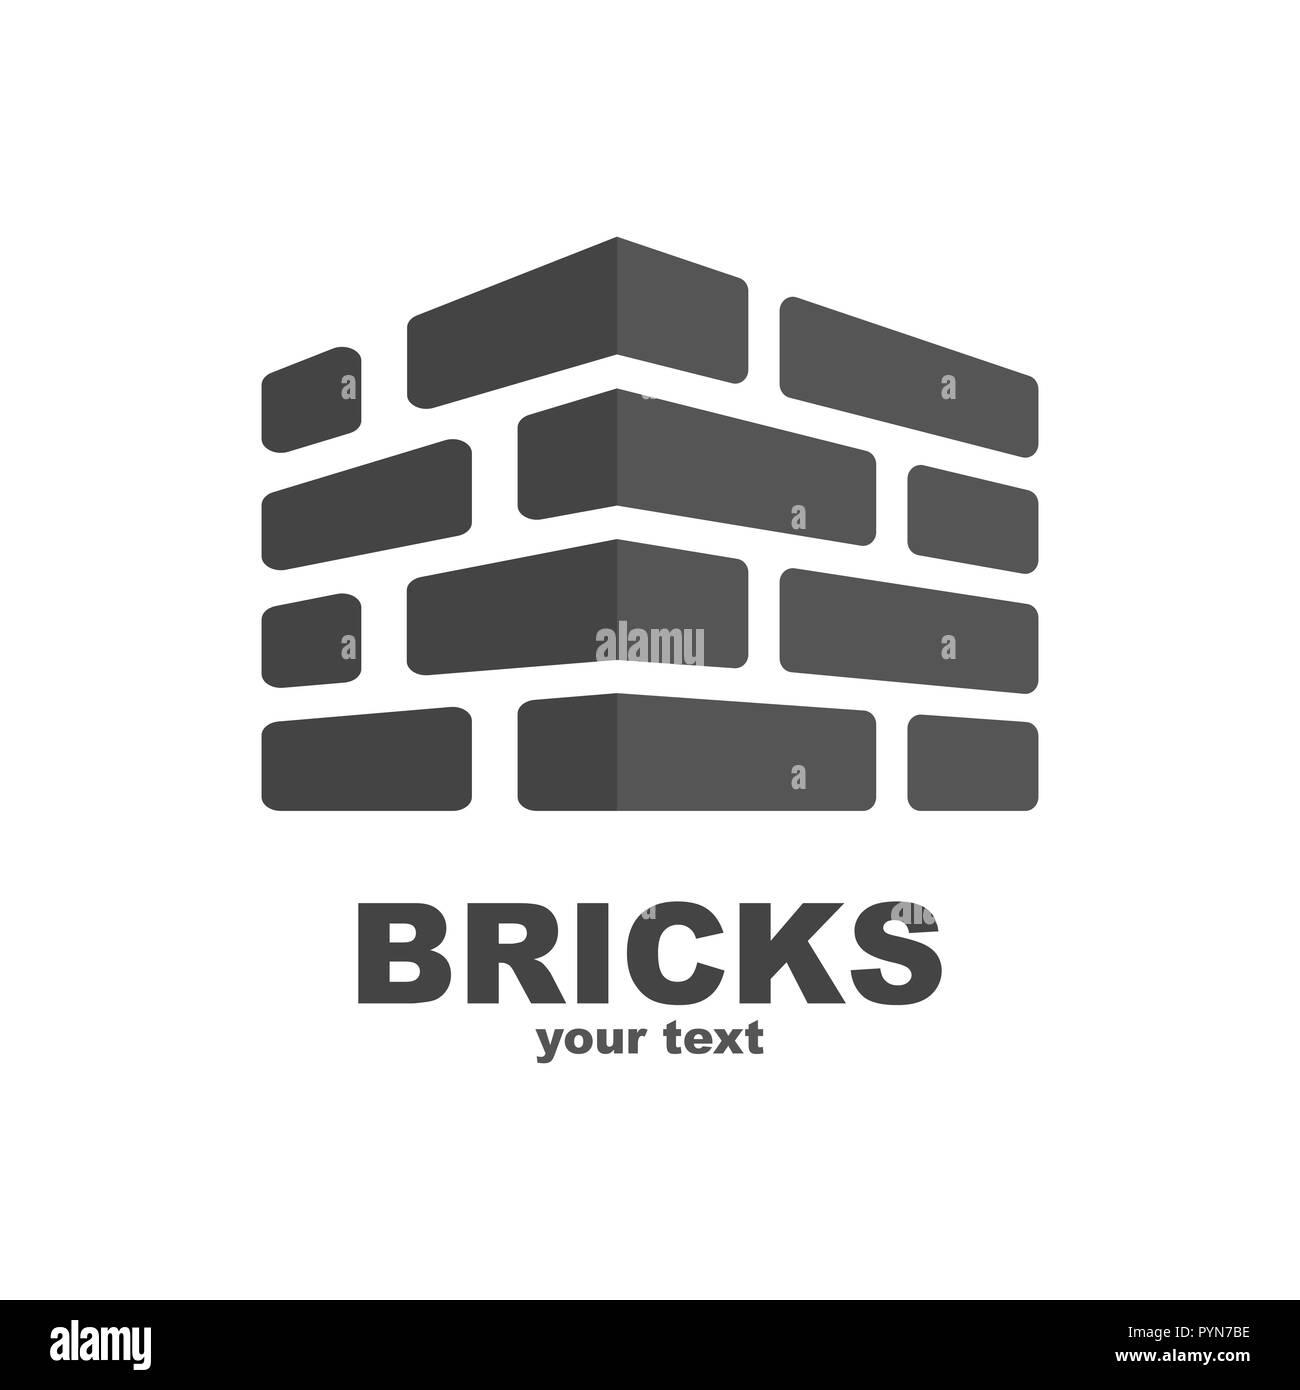 Brick Contruction Logo Template Design. Vector. EPS 10 Stock Vector